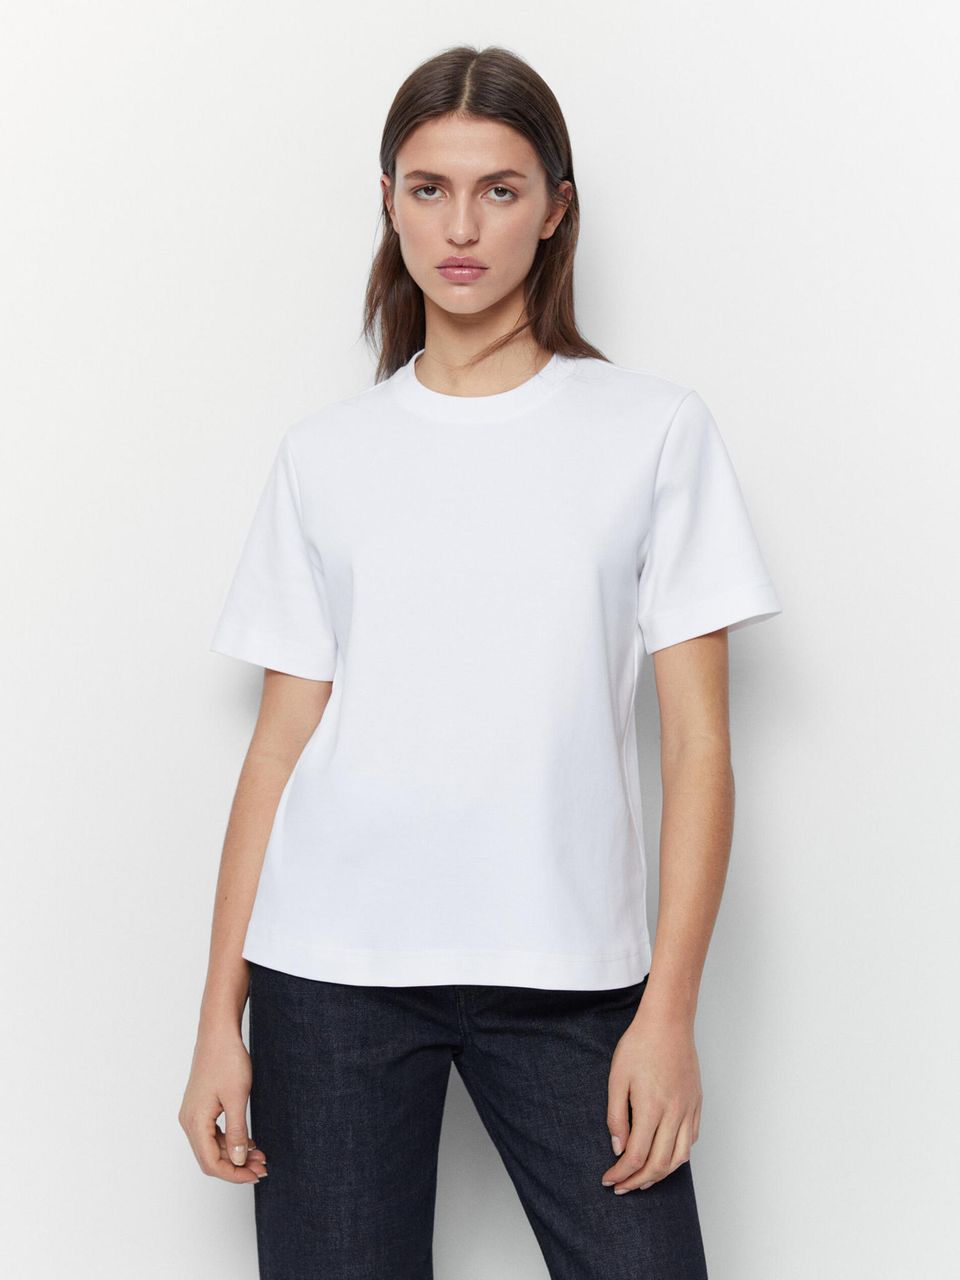 Weiße T-Shirts eine große Liebe? Erst seitdem Moderedakteurin Julika dieses Modell von Massimo Dutti im Schrank hat. 